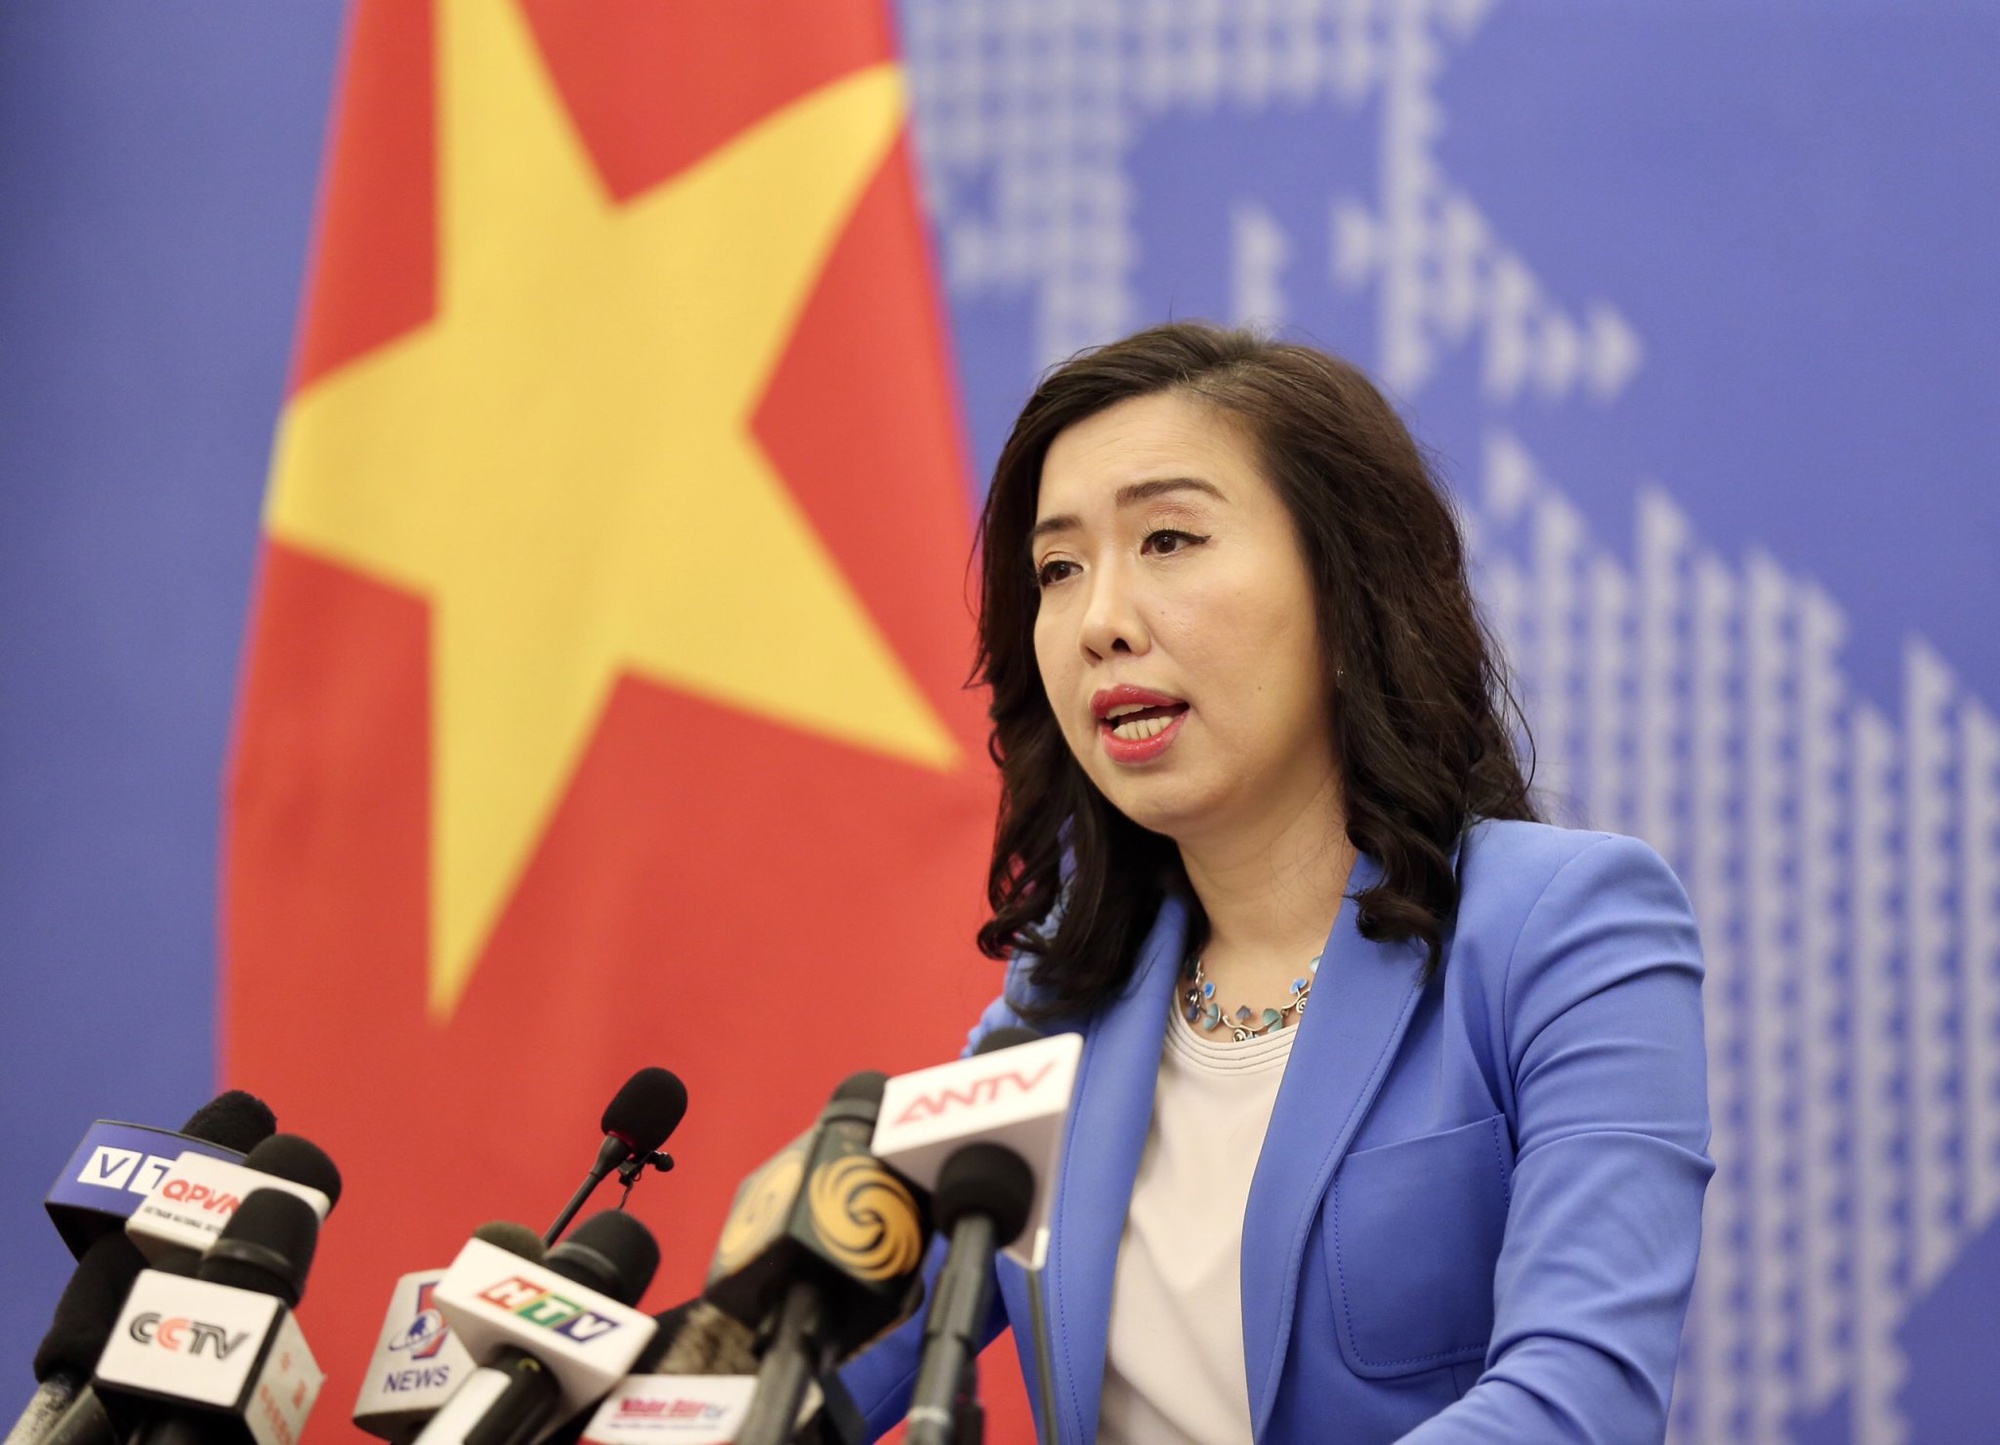 Hợp tác giữa Việt Nam và Đặc Khu hành chính Hong Kong (Trung Quốc) sẽ không ngừng phát triển - Ảnh 1.